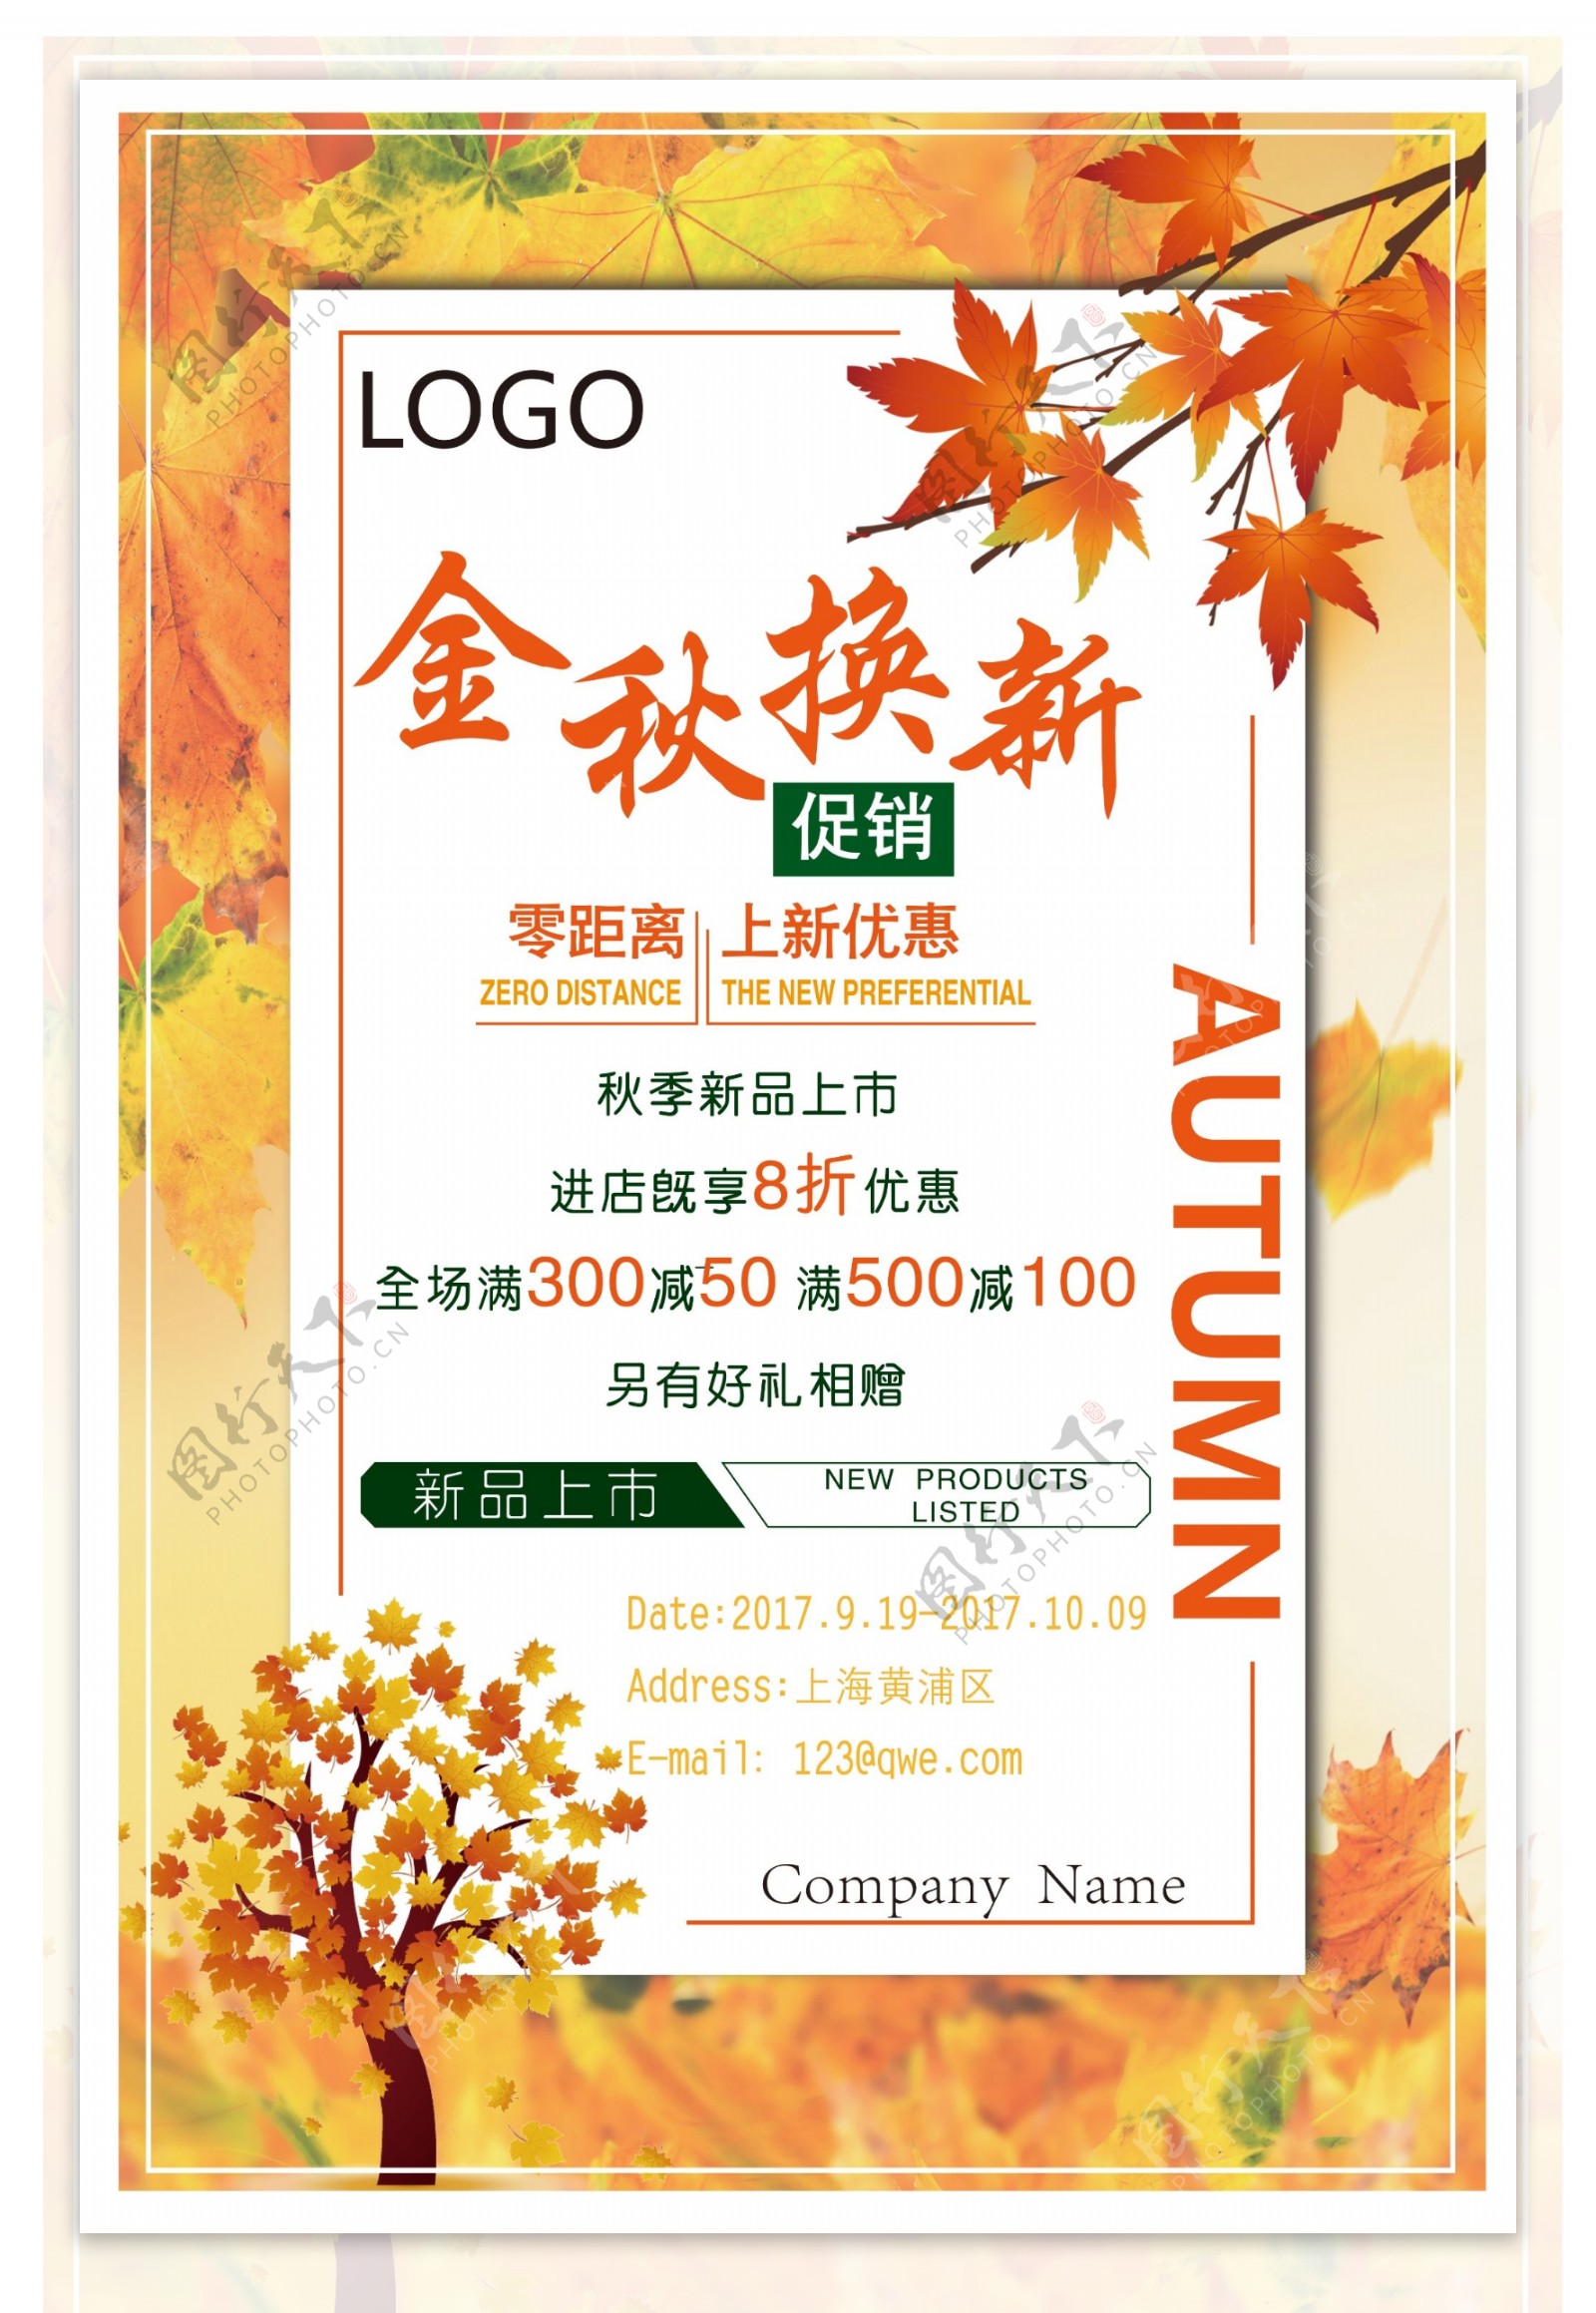 2017年秋季水彩枫叶商品促销创意海报设计